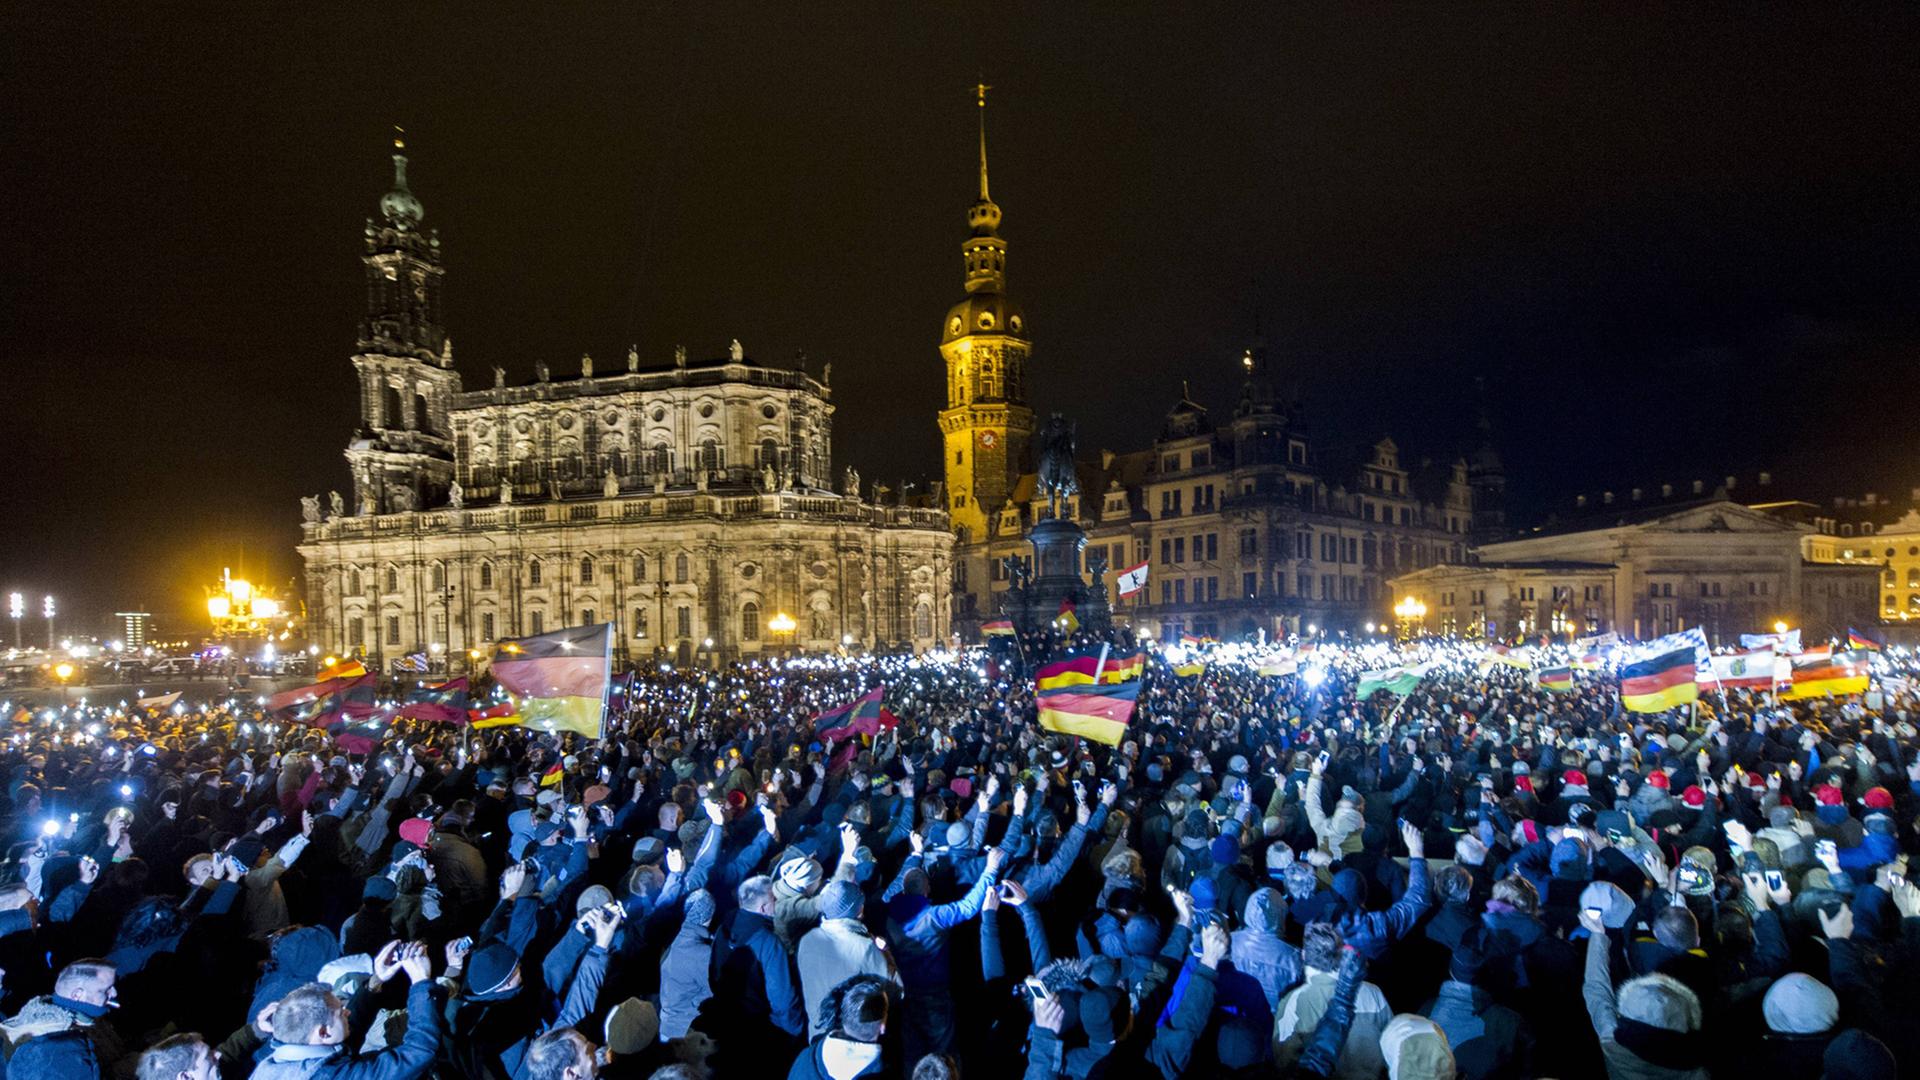 Teilnehmer einer Demonstration des Bündnisses Patriotischer Europaeer gegen Islamisierung des Abendlandes (Pegida) sind am Montagabend, den 22.12.2014 auf dem Theaterplatz in Dresden versammelt.